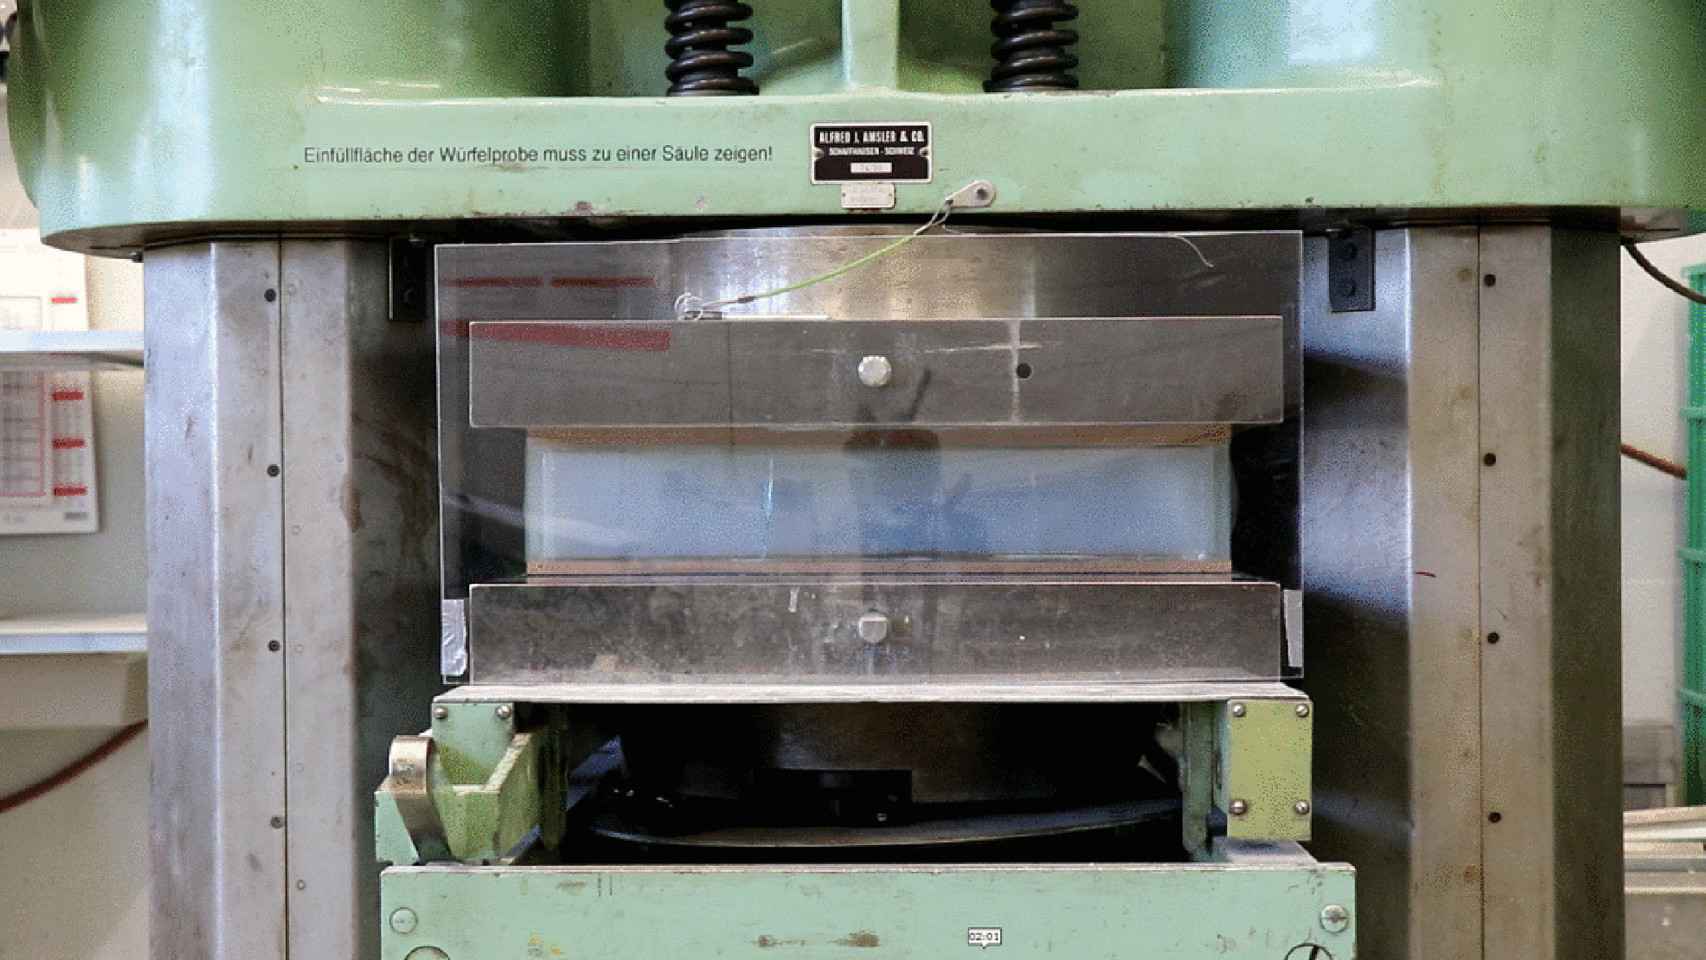 Uno de los ladrillos Aerobrick en una prensa industrial